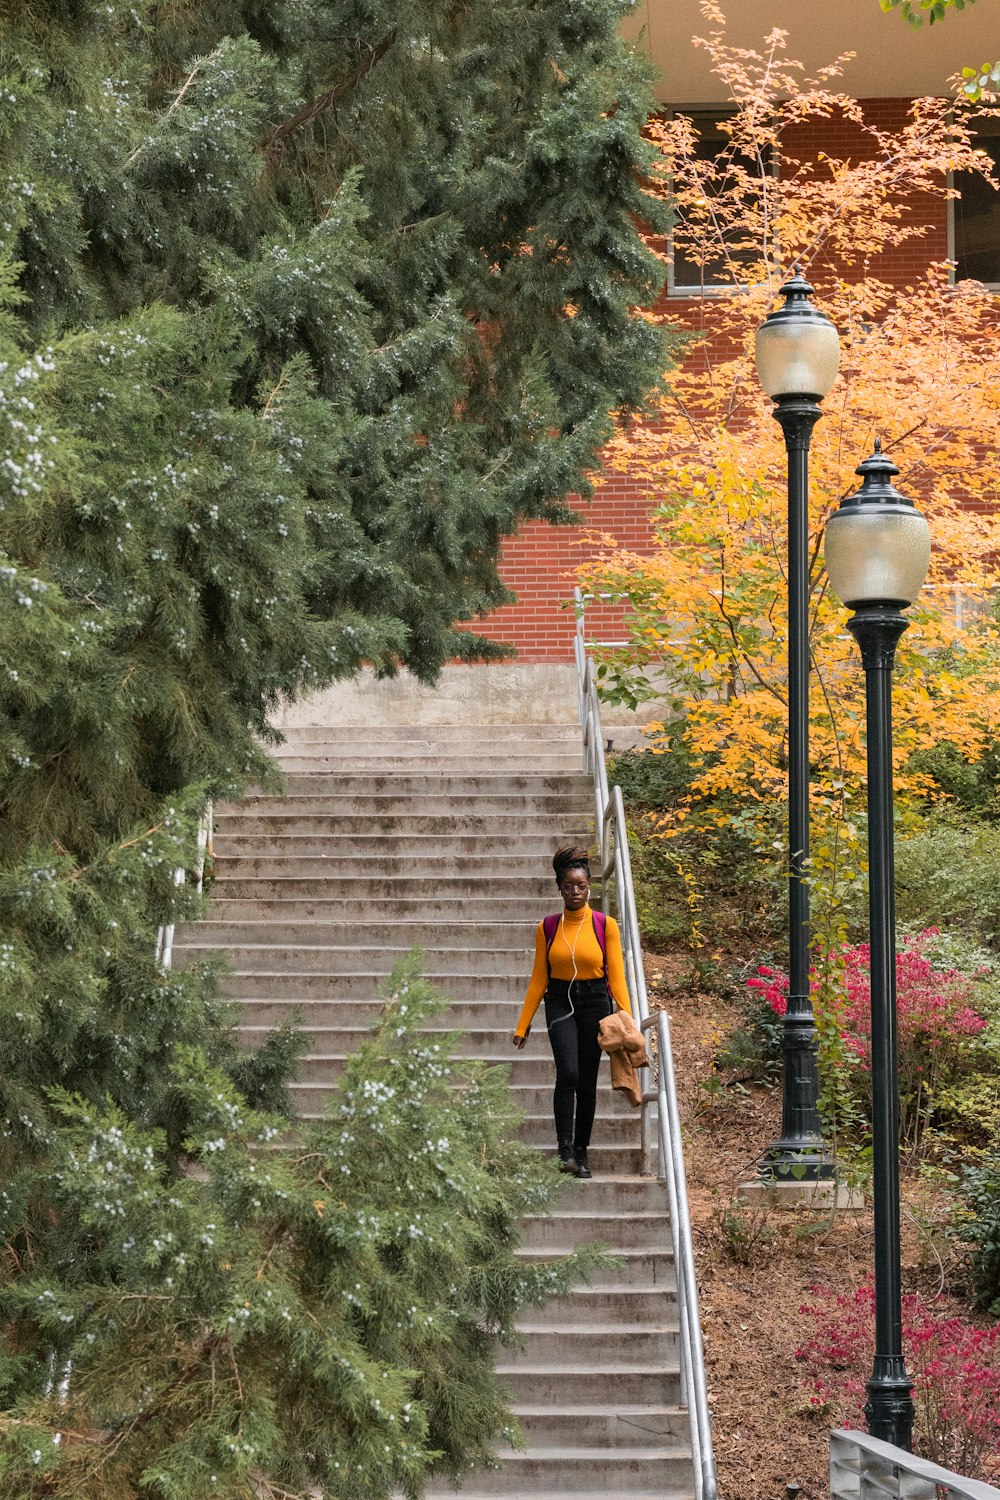 オレンジ色の長袖シャツを着た女性が階下を歩いている浅い焦点の写真